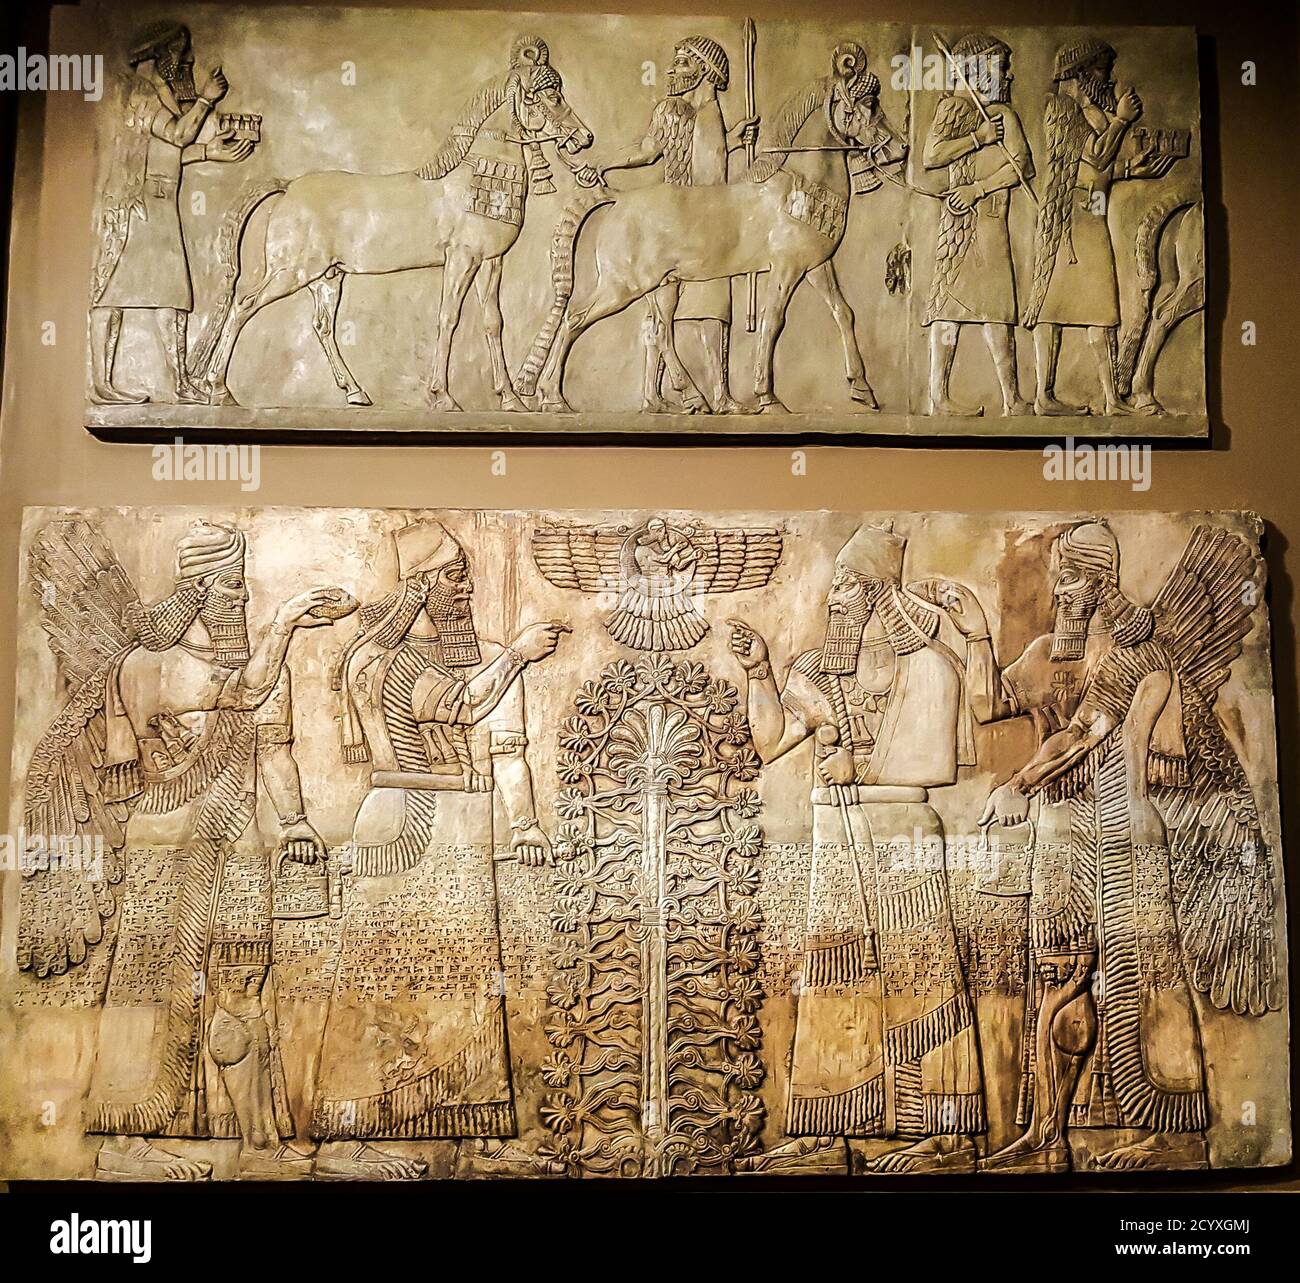 Plâtres des reliefs des palais royaux des rois assyriens. Musée Pouchkine, Moscou Banque D'Images